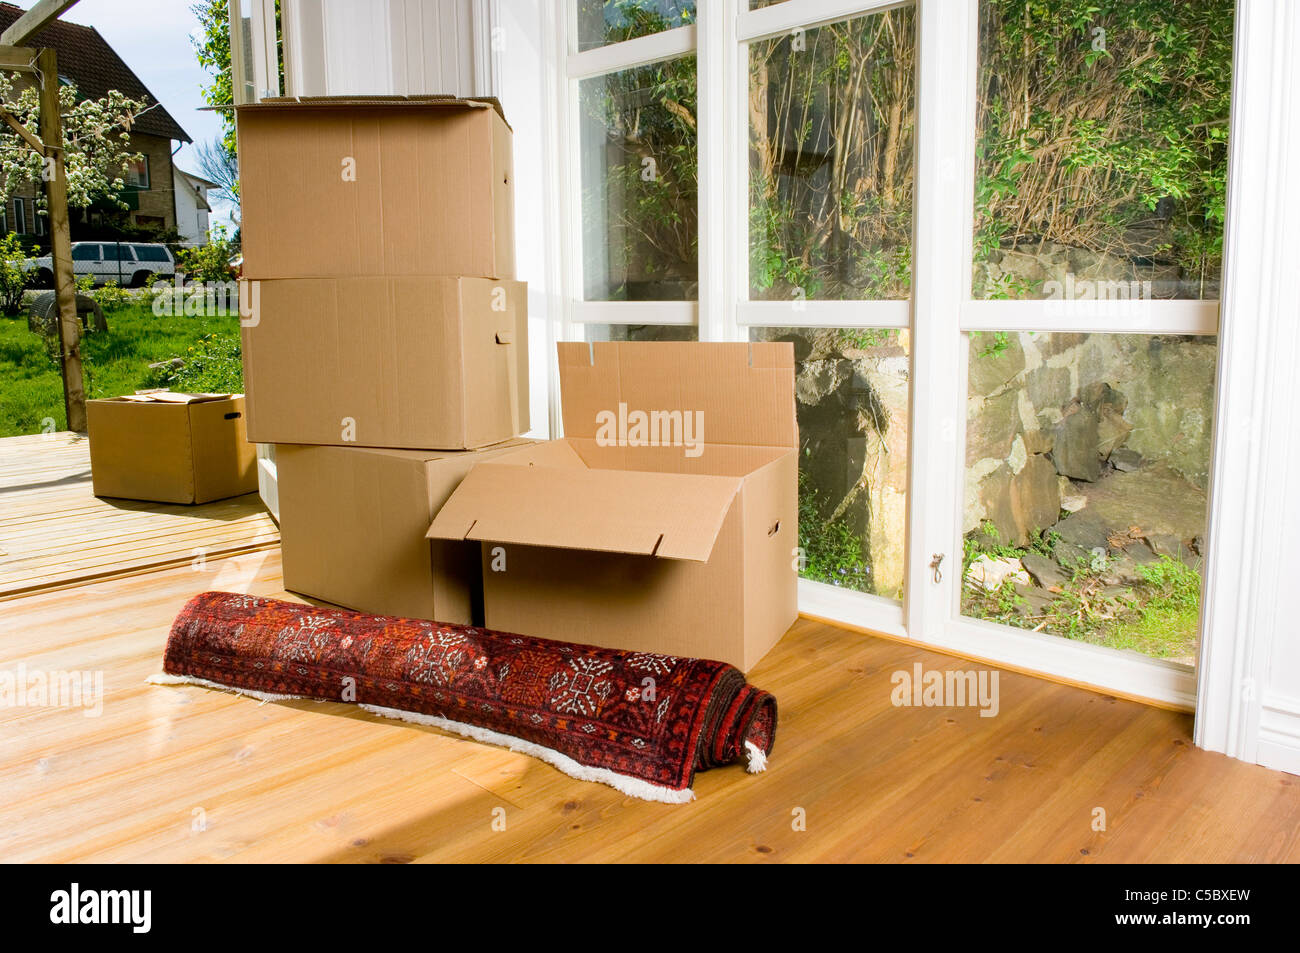 Stapeln von Umzugskartons und Teppich auf Holzboden an der Tür  Stockfotografie - Alamy